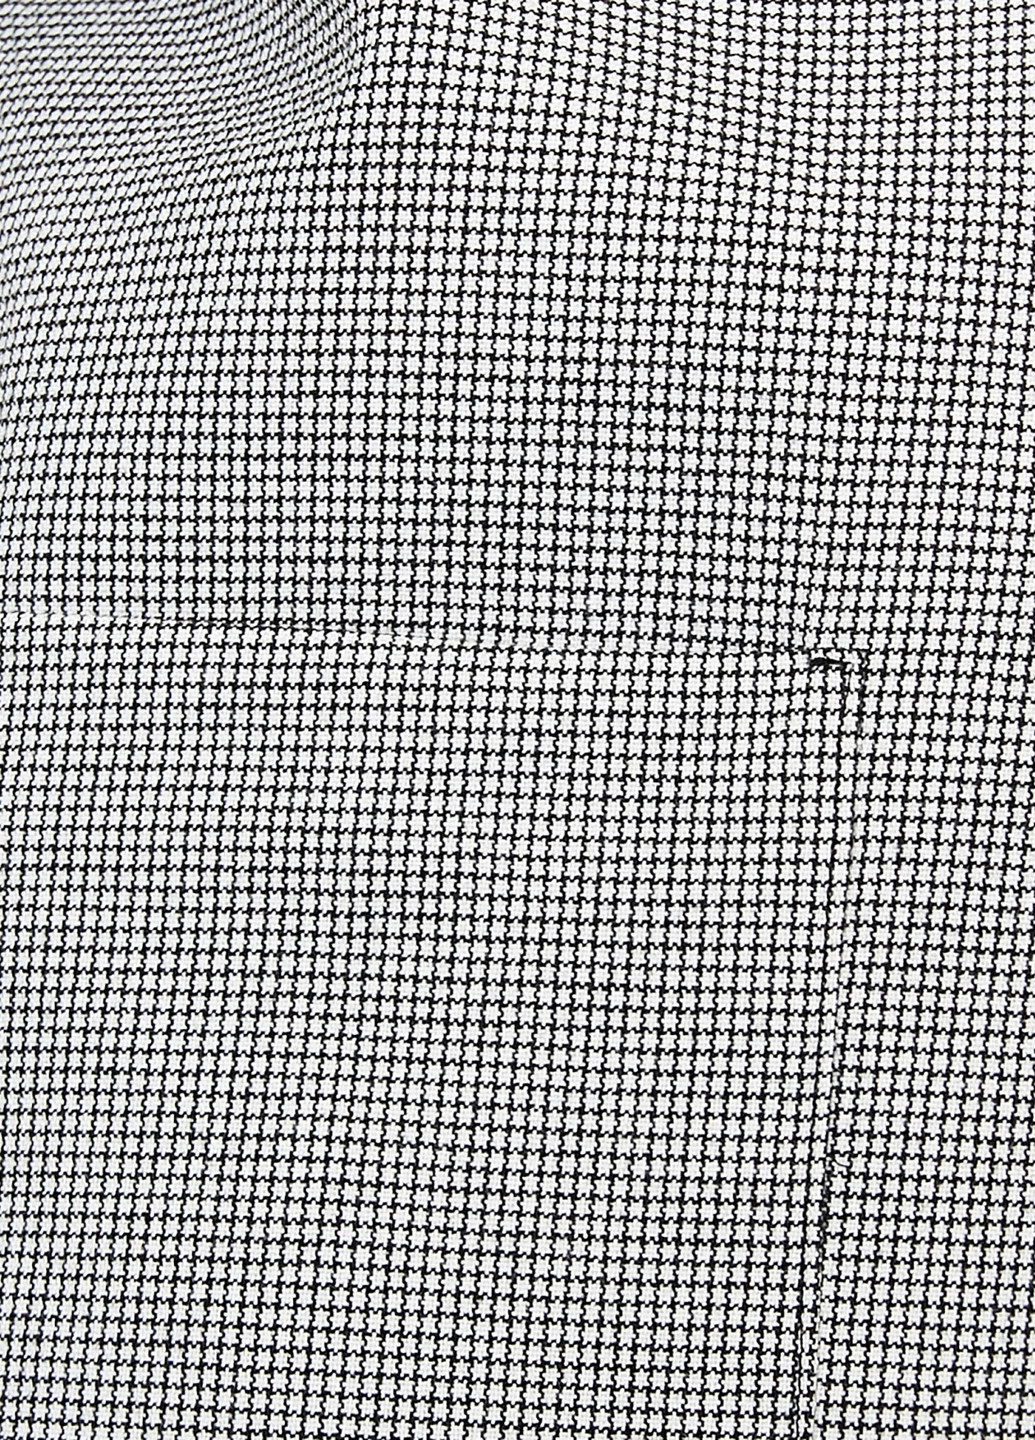 Черно-белый женский пиджак KOTON - демисезонный